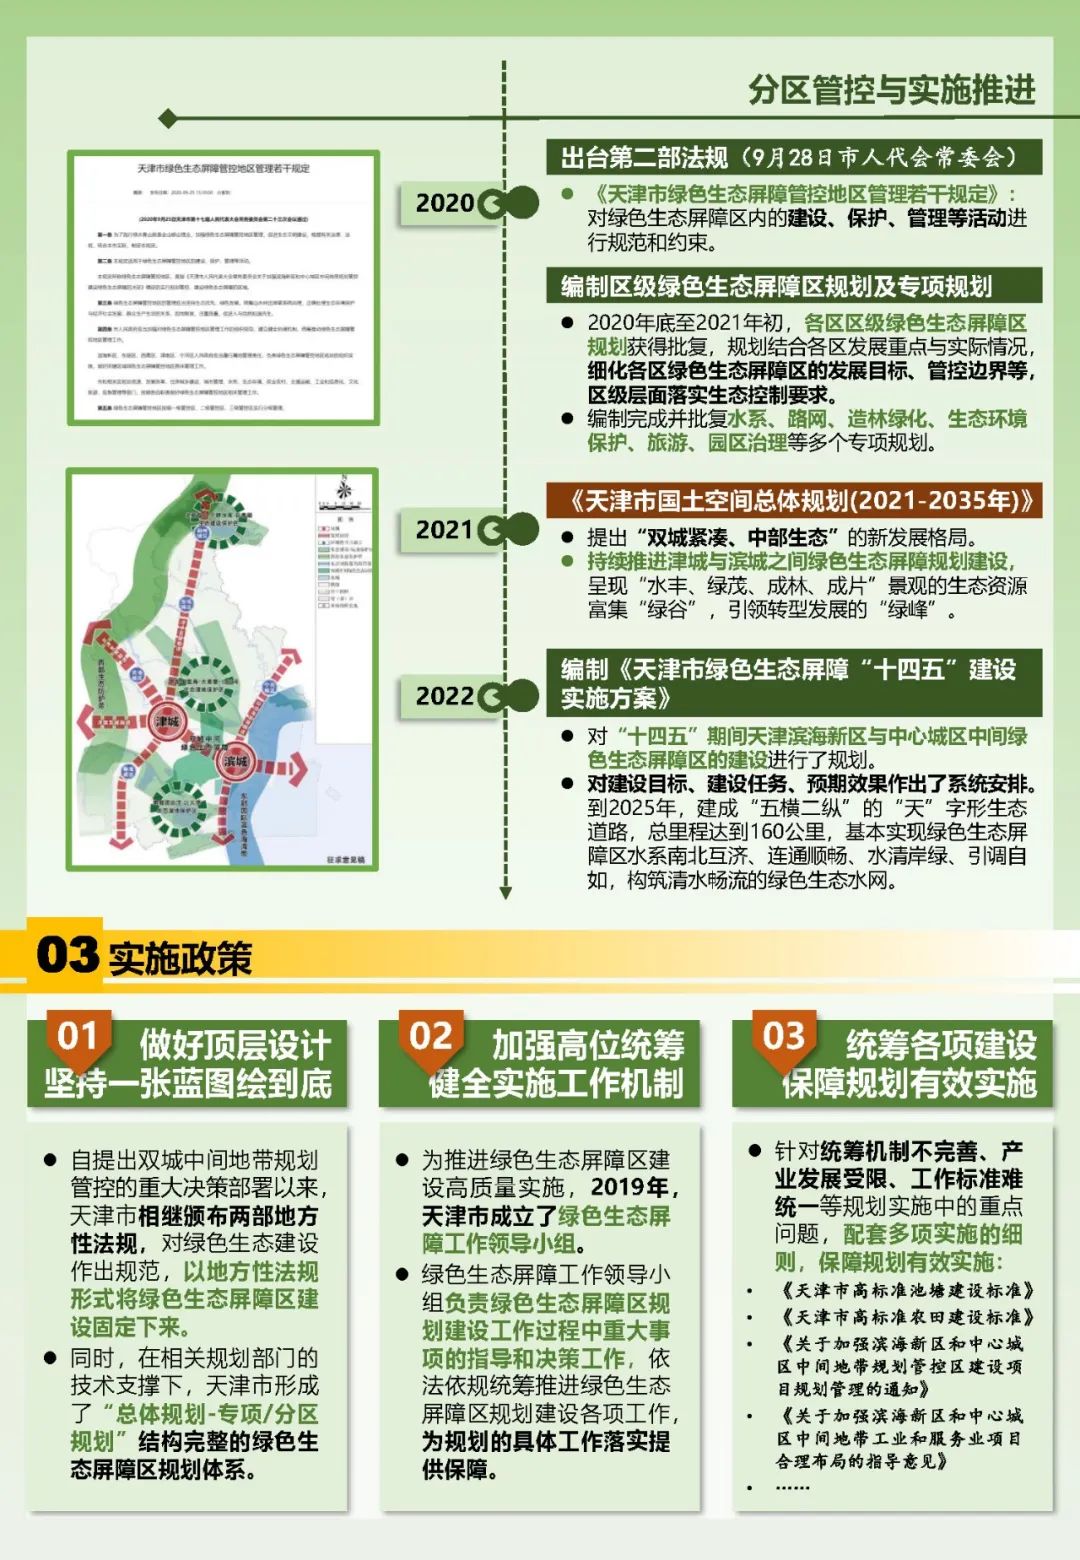 他山之石 | 天津双城中间绿色生态屏障区——顶层设计强保障，一张蓝图绘到底